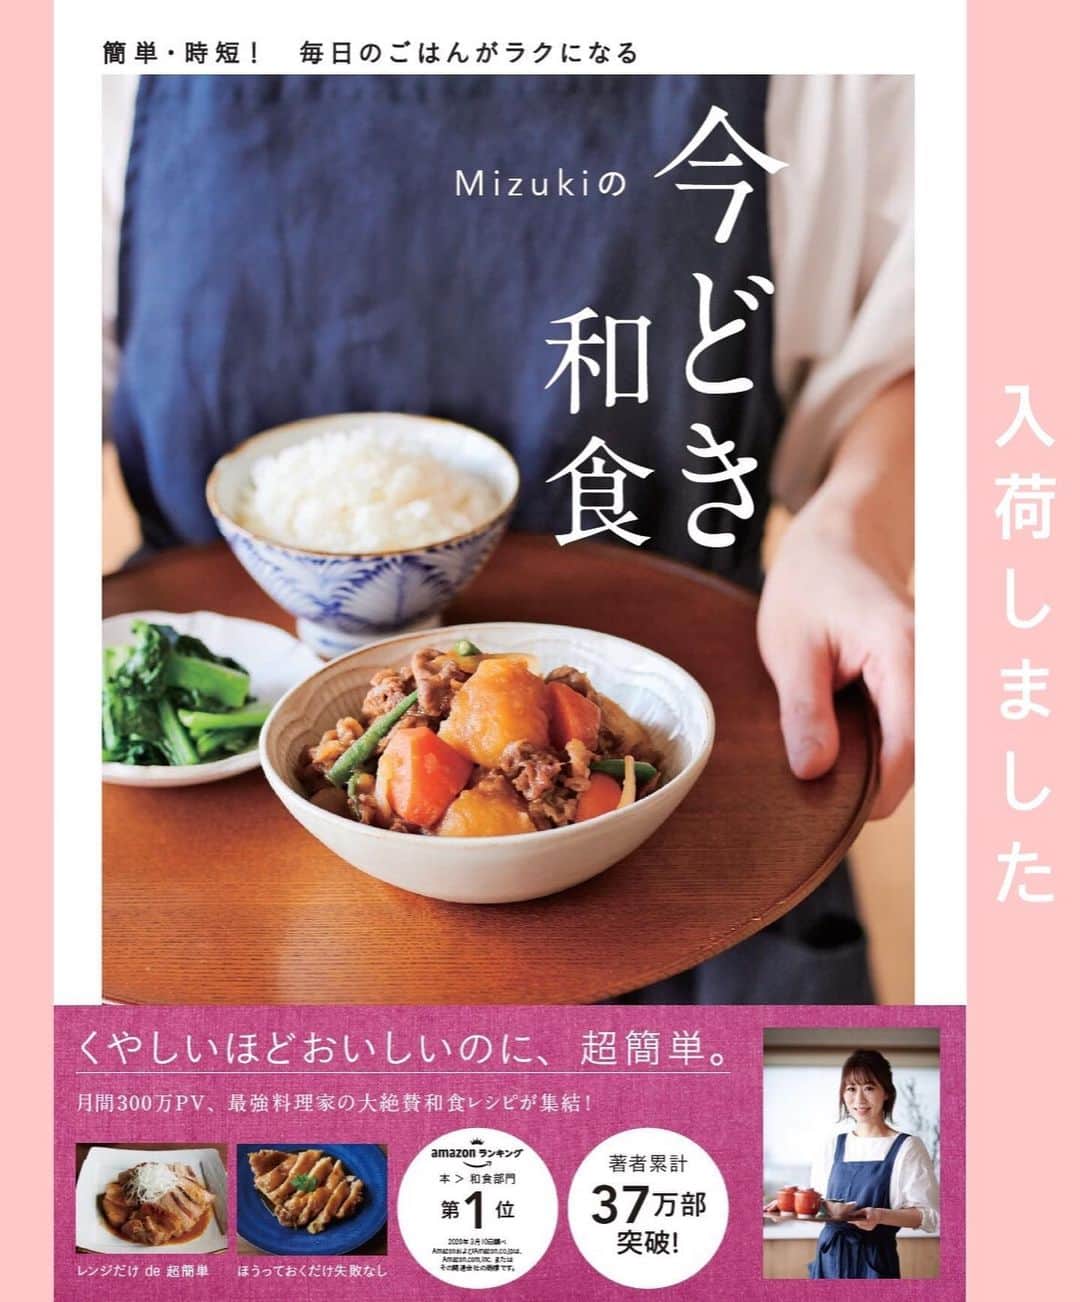 Mizuki【料理ブロガー・簡単レシピ】さんのインスタグラム写真 - (Mizuki【料理ブロガー・簡単レシピ】Instagram)「・﻿ 【レシピ】ーーーーーーーーーーーー﻿ ♡ふわシャキ♡長芋入り鶏つくね♡﻿ ーーーーーーーーーーーーーーーーー﻿ ﻿ ﻿ ﻿ おはようございます(*^^*)﻿ ﻿ 今日ご紹介させていただくのは﻿ ゴロっと長芋入り鶏つくね♡﻿ 角切りにした長芋は食感がよく﻿ ヘルシーにかさ増しもできて﻿ いいこと尽くめ(*´艸`)﻿ 小さめサイズでお子さんも食べやすく﻿ お弁当にもぴったりですよ〜♩﻿ ﻿ とっても簡単にできるので﻿ よかったらお試し下さいね(*^^*)﻿ (6個作ったつもりが﻿ 写真見たら7個でした😂笑)﻿ ﻿ ﻿ ﻿ ーーーーーーーーーーーーーーーーーーーー﻿ 【2人分】﻿ 長芋...100g﻿ 鶏ひき肉...200g﻿ ●片栗粉・マヨネーズ...各大1﻿ ●塩こしょう...少々﻿ ☆醤油・酒...各大2﻿ ☆砂糖・みりん...各大1﻿ サラダ油...大1/2﻿ ﻿ 1.長芋は8mm角に切る。ボウルにひき肉、長芋、●を入れてよく混ぜ、6〜7等分に分ける。☆は合わせておく。﻿ 2.フライパンにサラダ油を中火で熱し、1のタネを(水で濡らした手で)形を整えながら入れて焼く。焼き色が付いたら裏返し、フタをして弱めの中火で3分蒸し焼きにする。﻿ 3.☆を加えて煮からめる。﻿ ーーーーーーーーーーーーーーーーーーーー﻿ ﻿ ﻿ ﻿ 《ポイント》﻿ ♦︎たねは柔らかいので、成形する時は手を水で濡らしておくと◎又、形は変わりますが、スプーンで落として焼いてもOKです♩﻿ ♦︎冷蔵庫で3日くらい保存できます♩﻿ ﻿ ﻿ ﻿ ﻿ ﻿ ﻿ ﻿ 【🎥YouTube更新しました🎥】﻿ (＊ハイライトから飛べます♩)﻿ ↓﻿ 🧁ホケミで！クッキー&クリームマフィン﻿ 🍳揉んで焼くだけ！やみつきチキン﻿ 🌭材料4つ！アメリカンドッグ﻿ ﻿ ﻿ ﻿ ﻿ ﻿ 5刷重版しました🔻﻿ 本当にありがとうございます🙇‍♀️﻿ ＿＿＿＿＿＿＿＿＿＿＿＿＿＿＿＿＿＿＿﻿ 📕\ \ 新刊発売中 / /📕﻿ 簡単・時短！ 毎日のごはんがラクになる﻿ ✨🦋 【 #Mizukiの今どき和食 】🦋✨﻿ ＿＿＿＿＿＿＿＿＿＿＿＿＿＿＿＿＿＿＿﻿ なるべく少ない材料で﻿ 手間も時間も省きながら﻿ 簡単にできるおいしい和食レシピ♩﻿ 簡単に失敗なくマスターできる一冊で﻿ もっと気軽に、カジュアルに﻿ 和食を楽しんで下さいね(*^^*)﻿ ＿＿＿＿＿＿＿＿＿＿＿＿＿＿＿＿＿＿＿﻿ ﻿ ﻿ ﻿ ＿＿＿＿＿＿＿＿＿＿＿＿＿＿＿＿＿﻿ 🎀5刷重版しました🎀﻿ 混ぜて焼くだけ。はじめてでも失敗しない！﻿ 【#ホットケーキミックスのお菓子 】﻿ ﻿ 一冊まるっとホケミスイーツ♩﻿ 普段のおやつから﻿ 特別な日にも使えるレシピを﻿ この一冊に詰め込みました(*^^*)﻿ ホットケーキミックスを使えば﻿ 簡単に本格的なお菓子が作れますよ♡﻿ ＿＿＿＿＿＿＿＿＿＿＿＿＿＿＿＿＿﻿ ﻿ ⭐️ストーリー、ハイライト、プロフ画面に﻿ 本のURLを貼らせていただいております♩﻿ →(@mizuki_31cafe )﻿ ﻿ ﻿ ﻿ ﻿ #長芋#つくね#鶏つくね#鶏ひき肉#ヘルシー#お弁当#うちで過ごそう#おうち時間#Mizuki#簡単レシピ#時短レシピ#節約レシピ#料理#レシピ#フーディーテーブル#マカロニメイト#おうちごはん#デリスタグラマー#料理好きな人と繋がりたい#おうちごはんlover#foodpic#follow#cooking#recipe#lin_stagrammer#stayhome#長芋入り鶏つくねm」6月24日 7時12分 - mizuki_31cafe